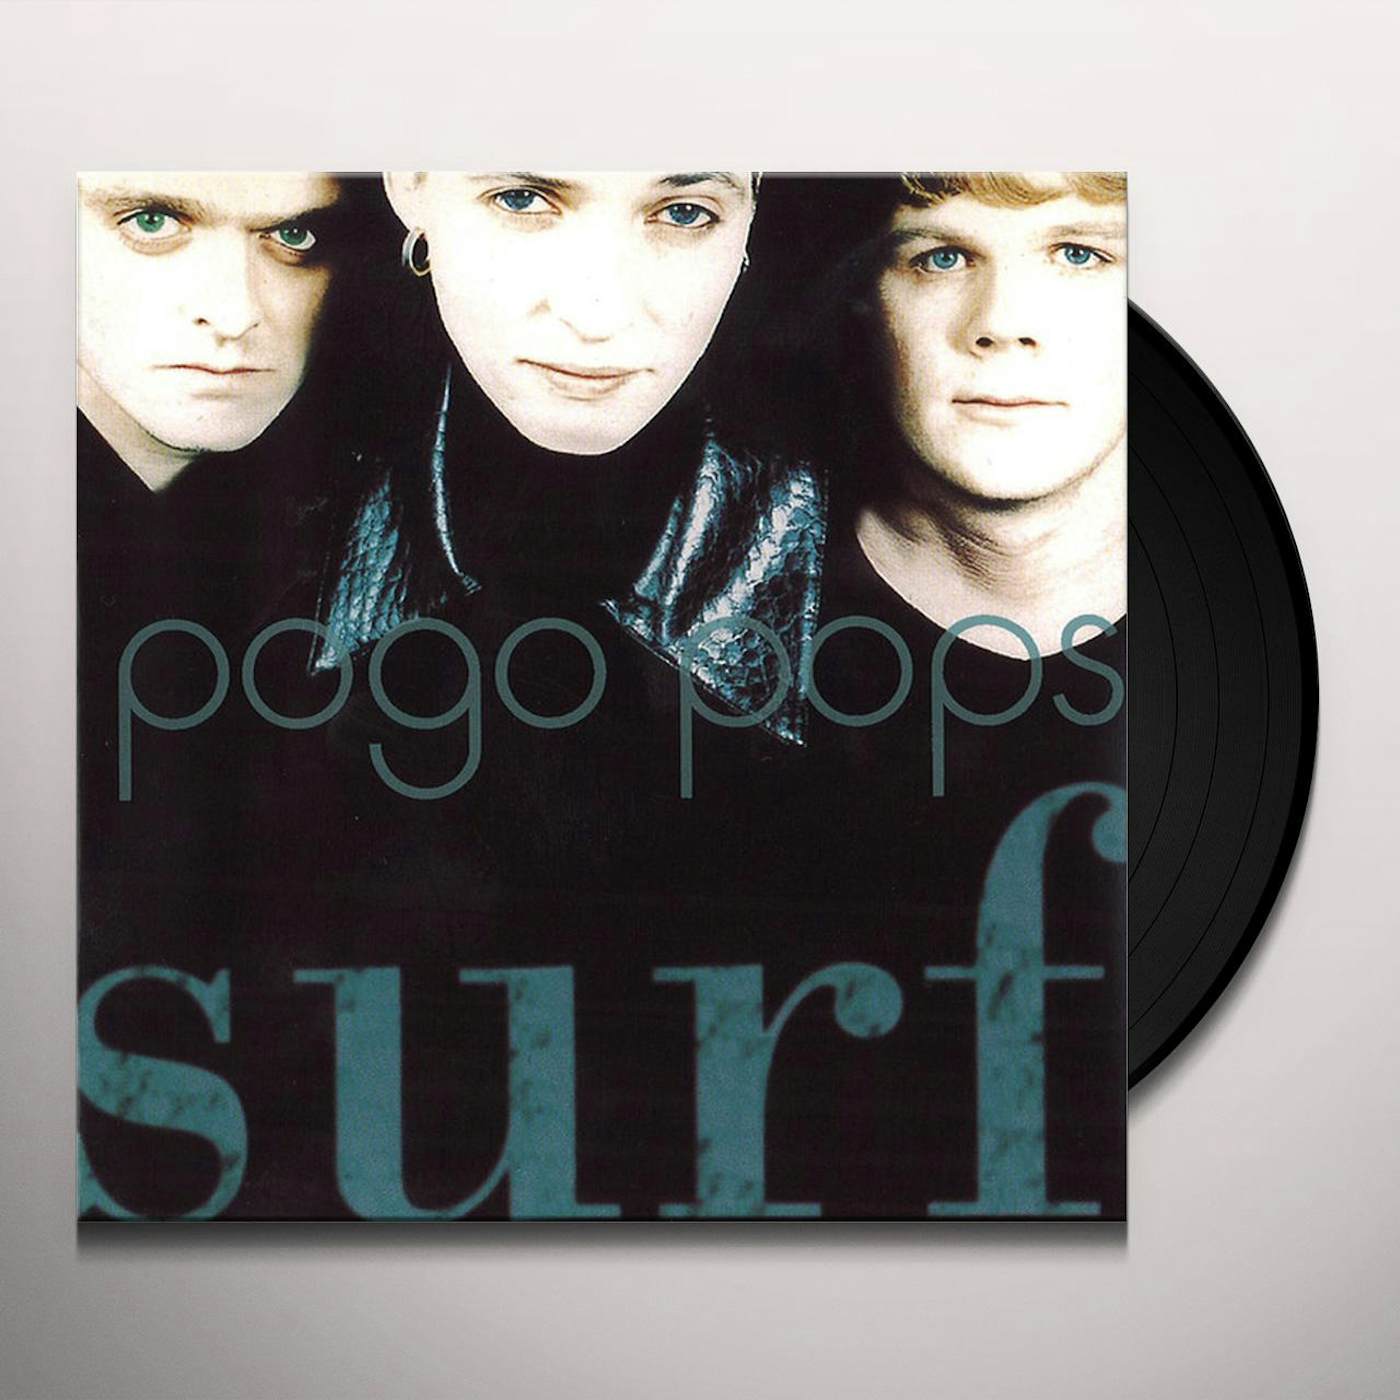 Pogo Pops Surf Vinyl Record